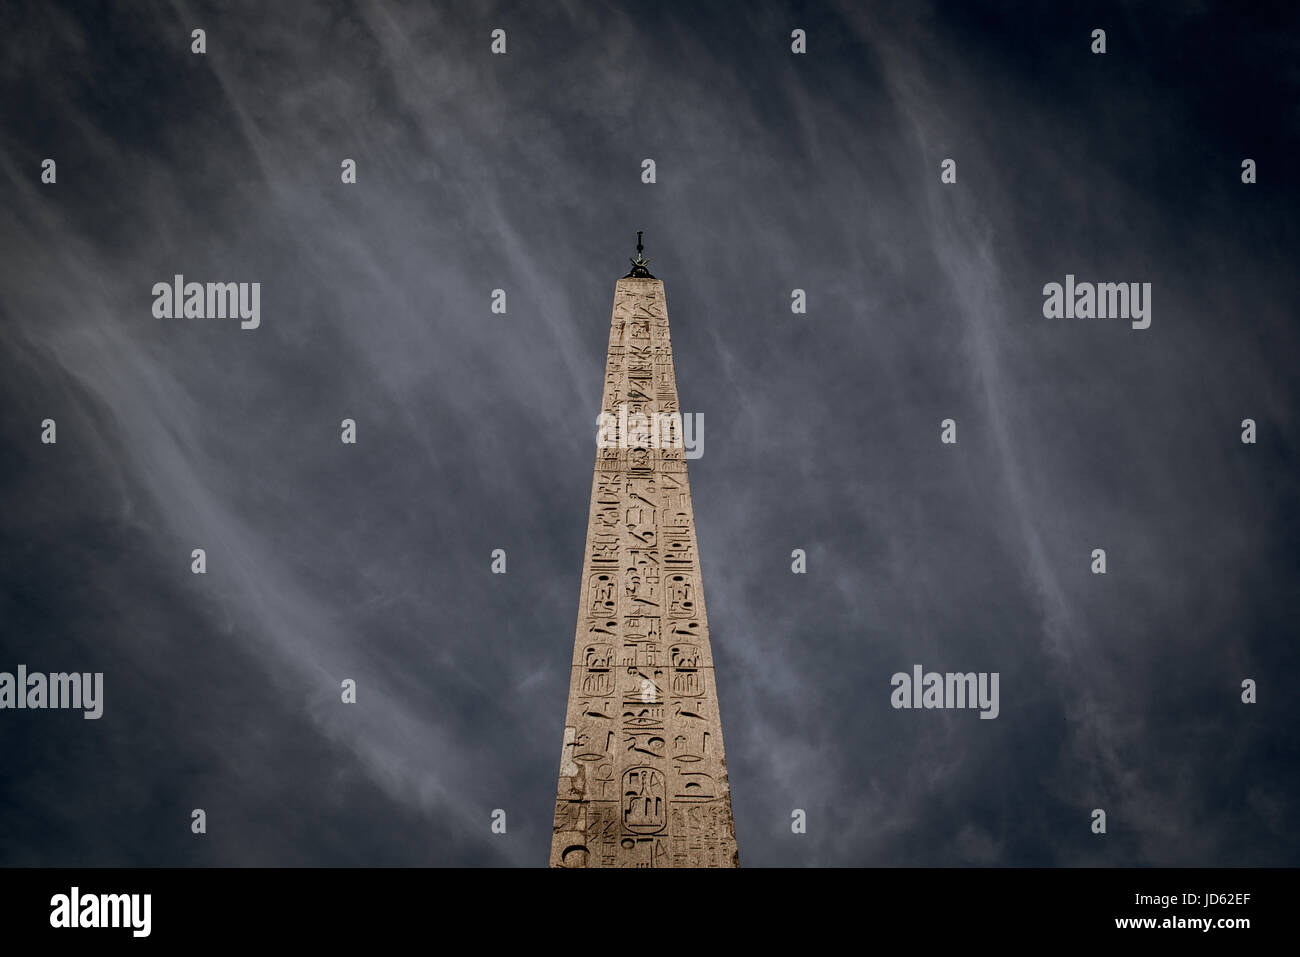 Le célèbre vieux obélisque en piazza del popolo Rome, vue depuis l'angle faible ciel dramatique Banque D'Images